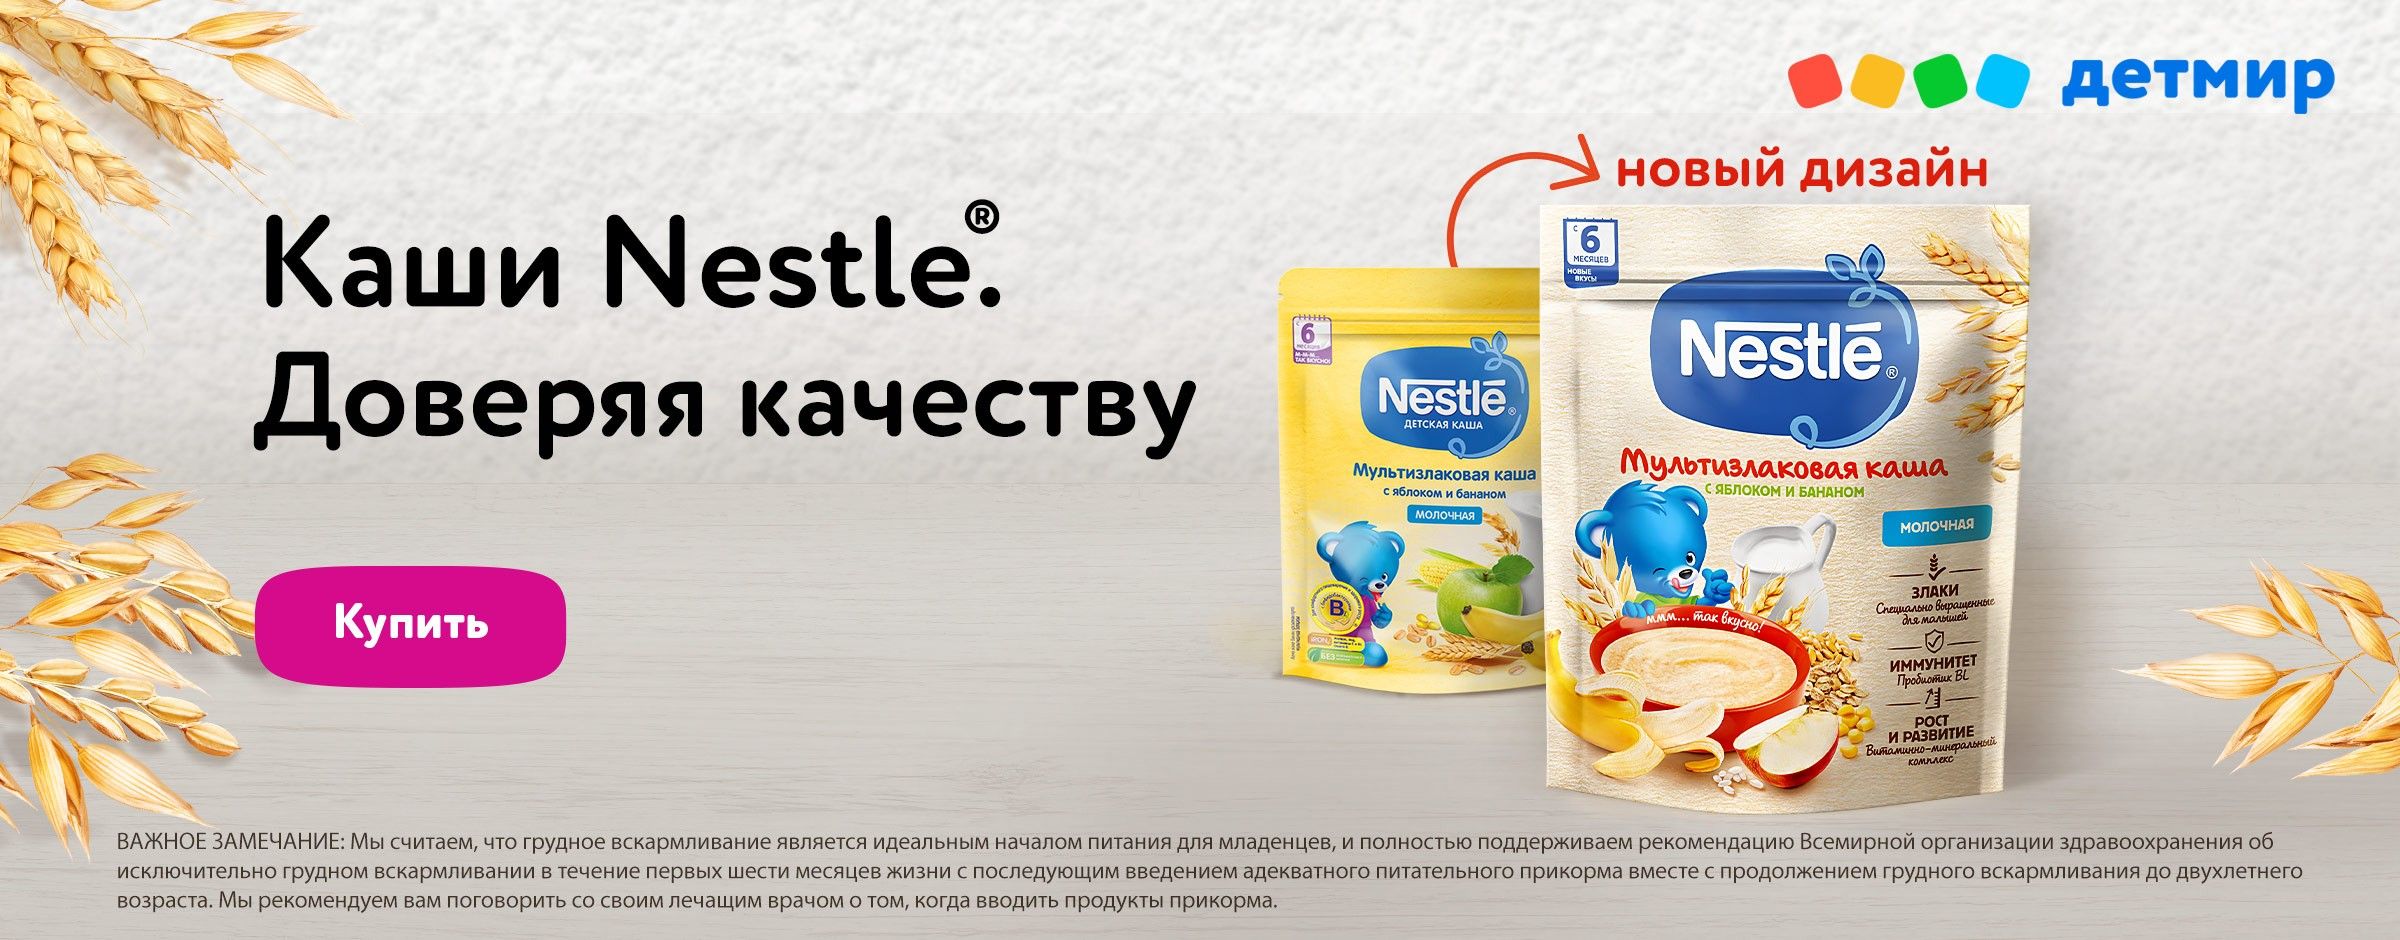 Каши Nestle категория